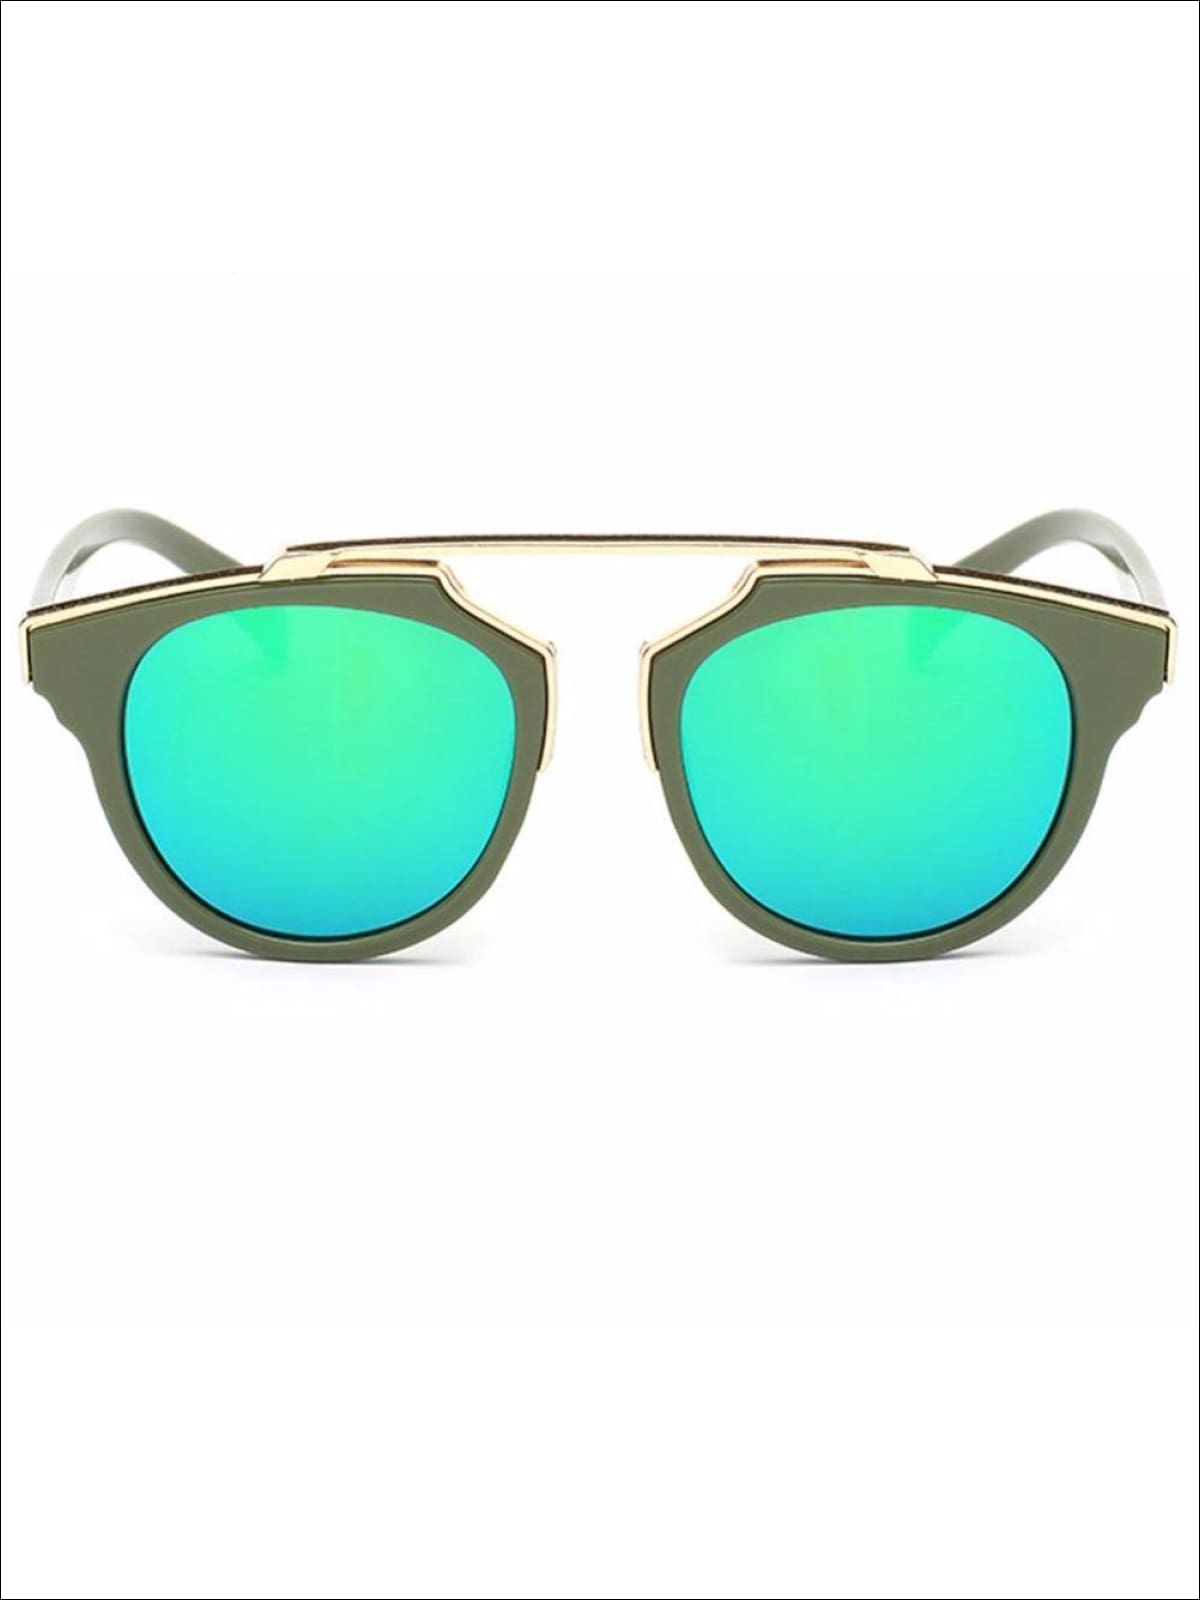 Girls Round Aviator Sunglasses with Gold Detail - Green / One - Girls Sunglasses